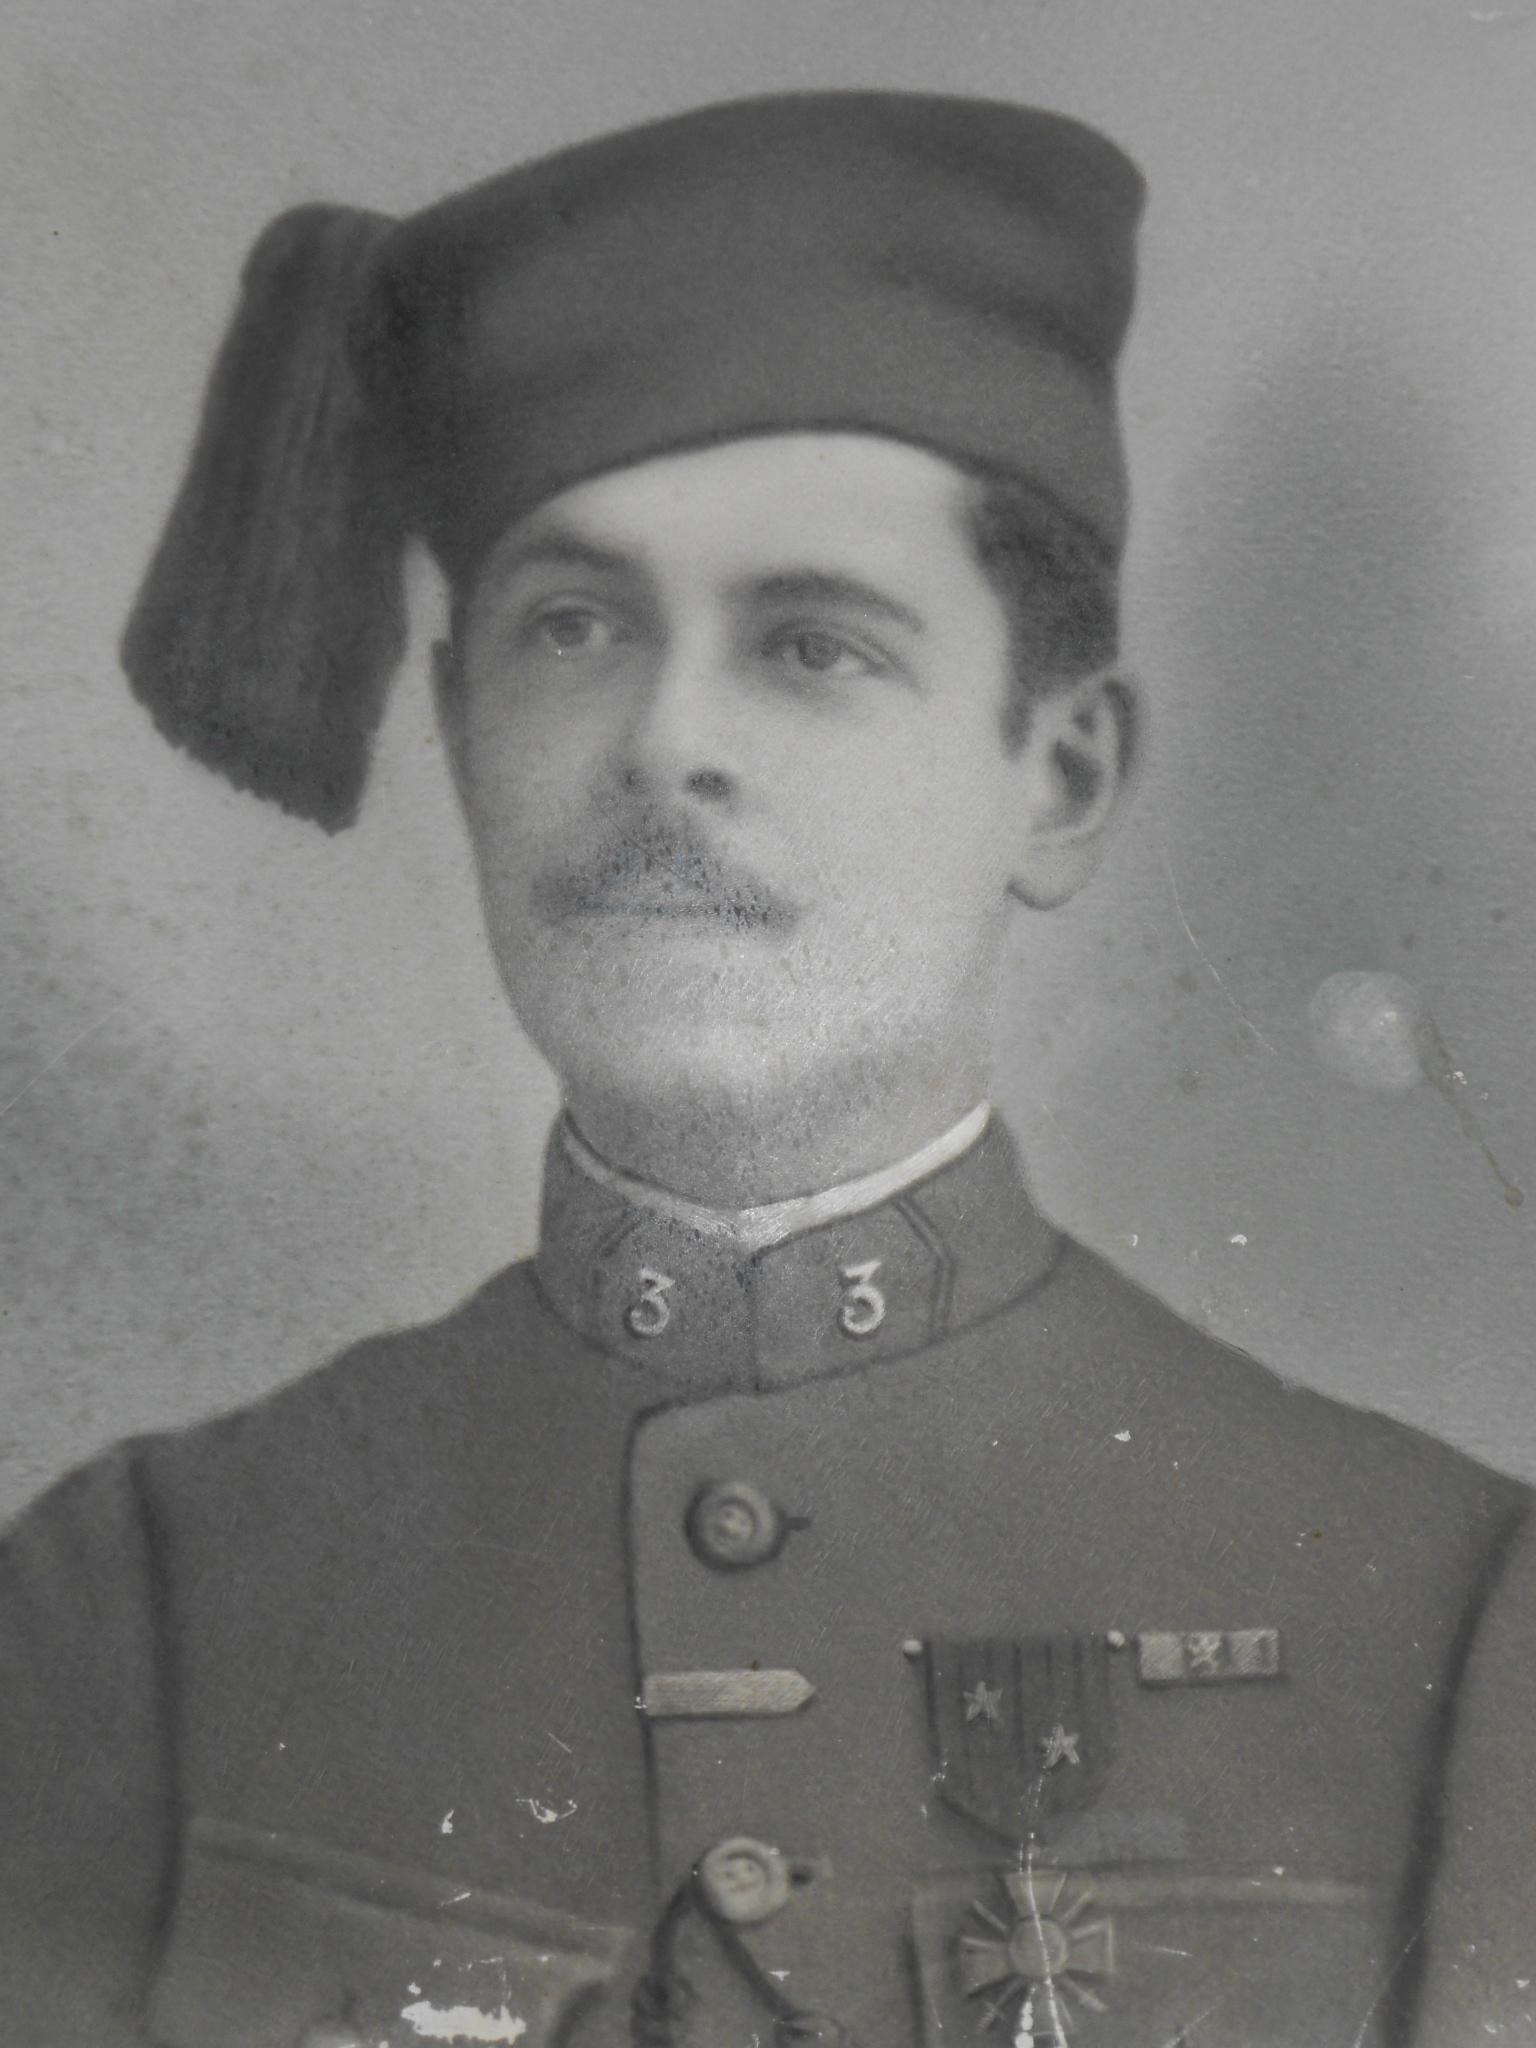 Sergent Julien Roy, 3ème Compagnie du 3ème Zouave de Marche. Né du premier mariage de son arrière-arrière-grand-mère maternelle en 1896 et décédé en 1917 en Lorraine.